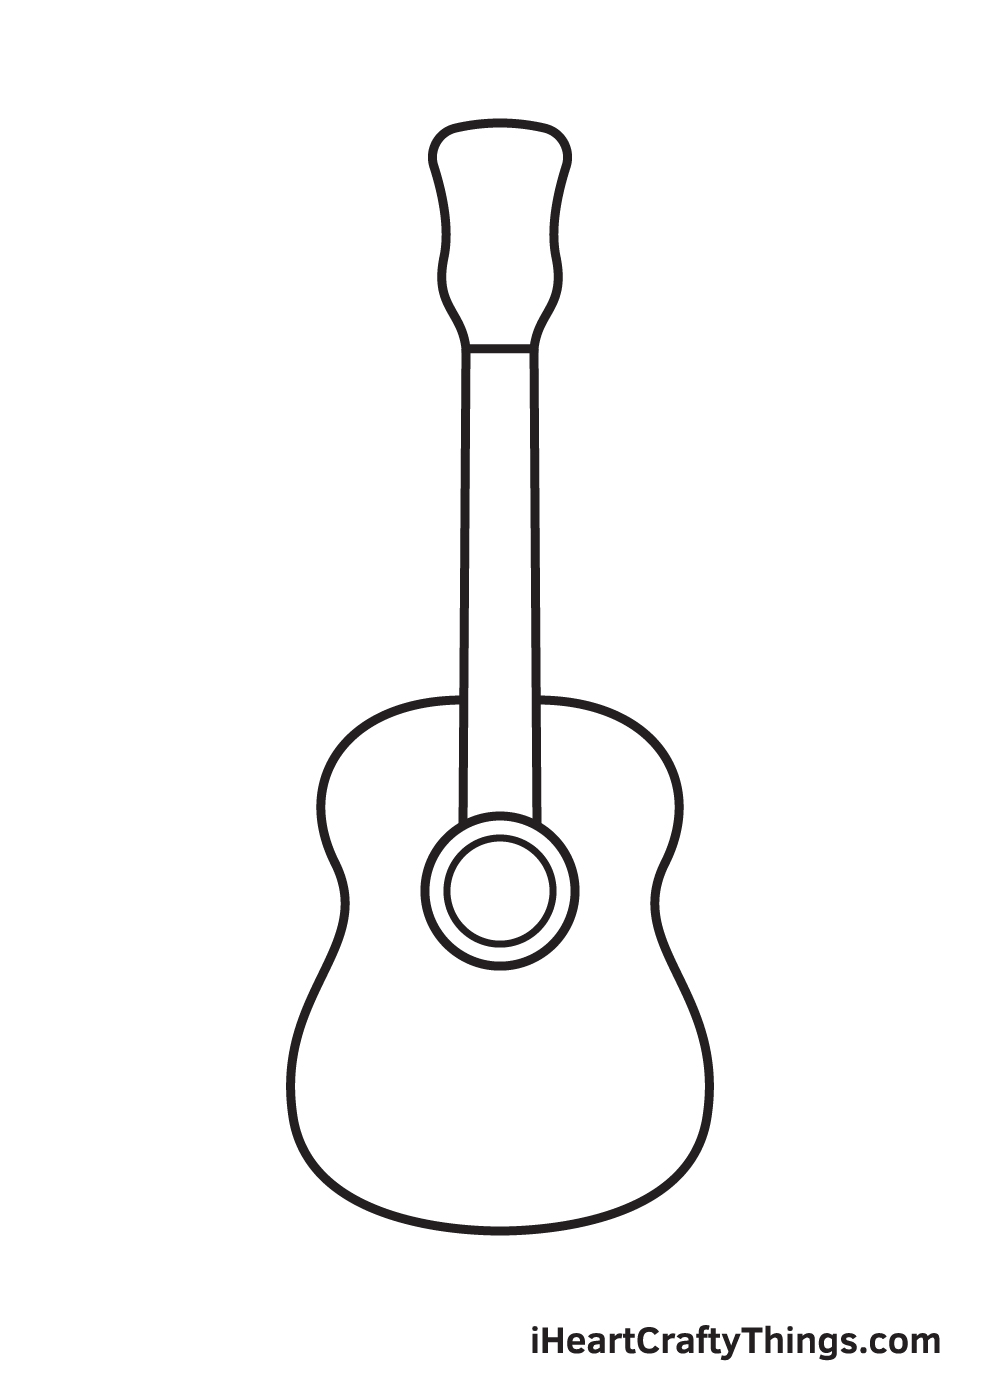 Guitar Drawing – Step 4